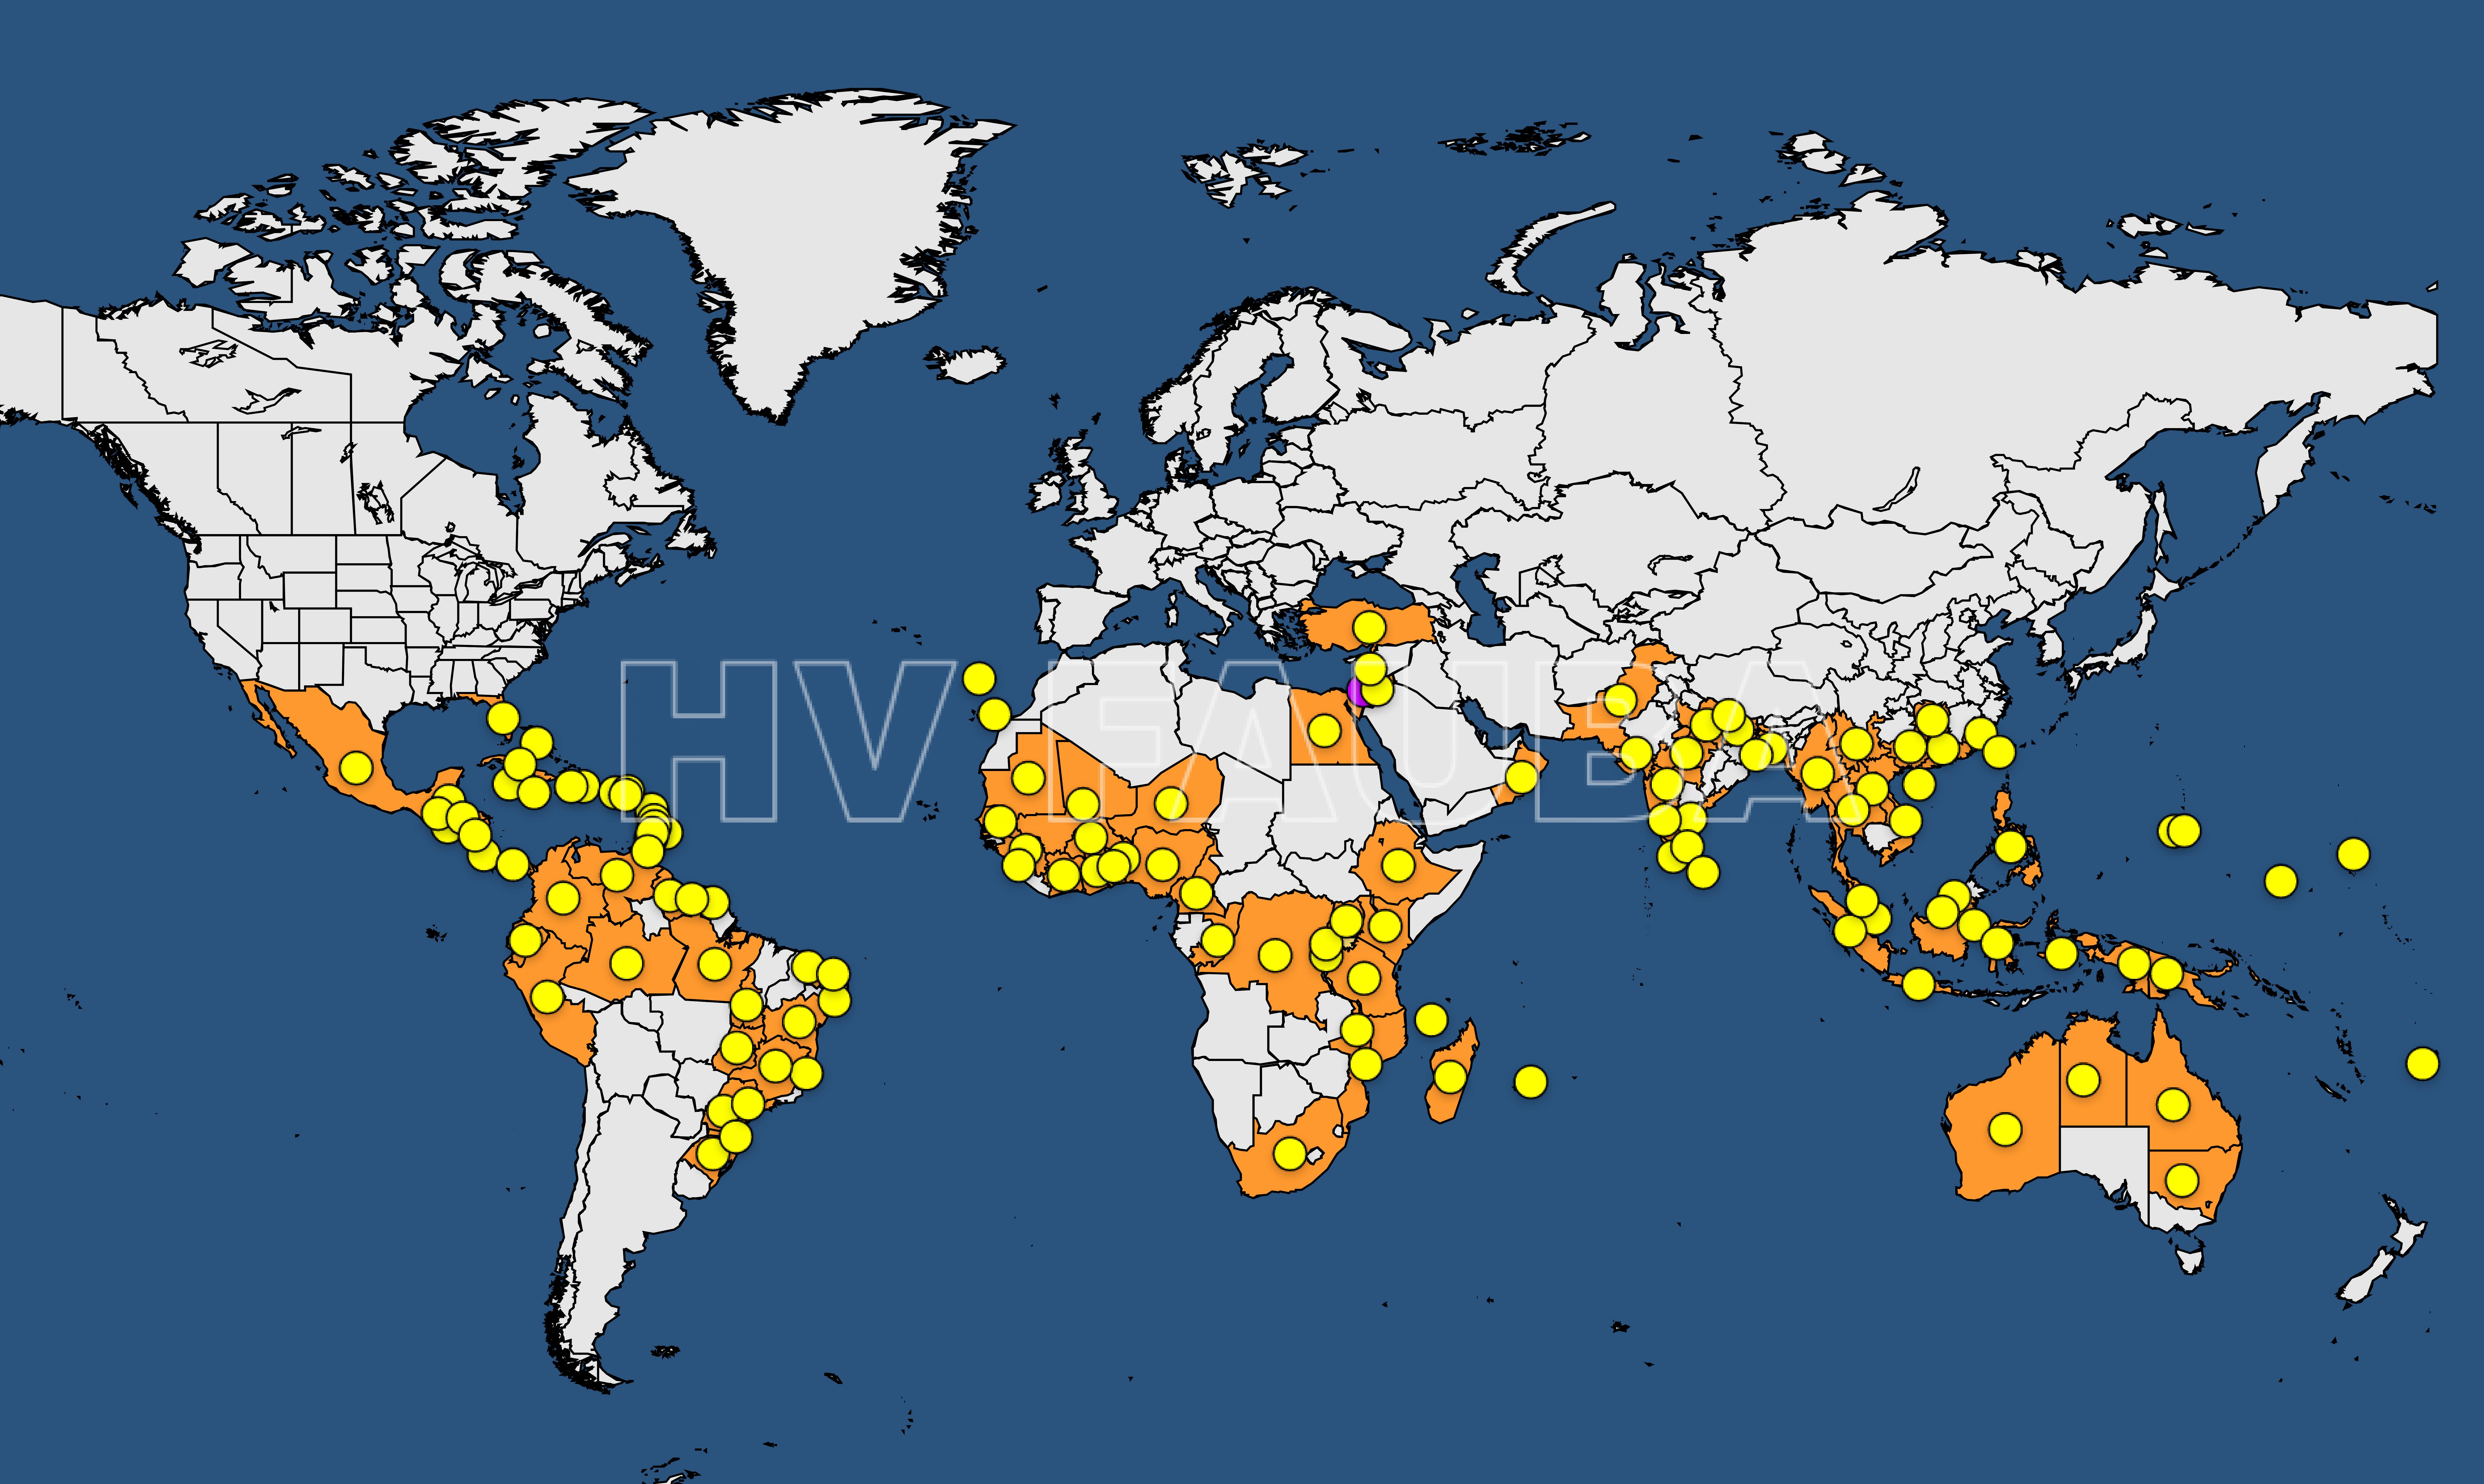 Mapa de la distribución mundial de la marchitez del banano por Fusarium. Fuente: EPPO; https://gd.eppo.int/taxon/FUSACB.